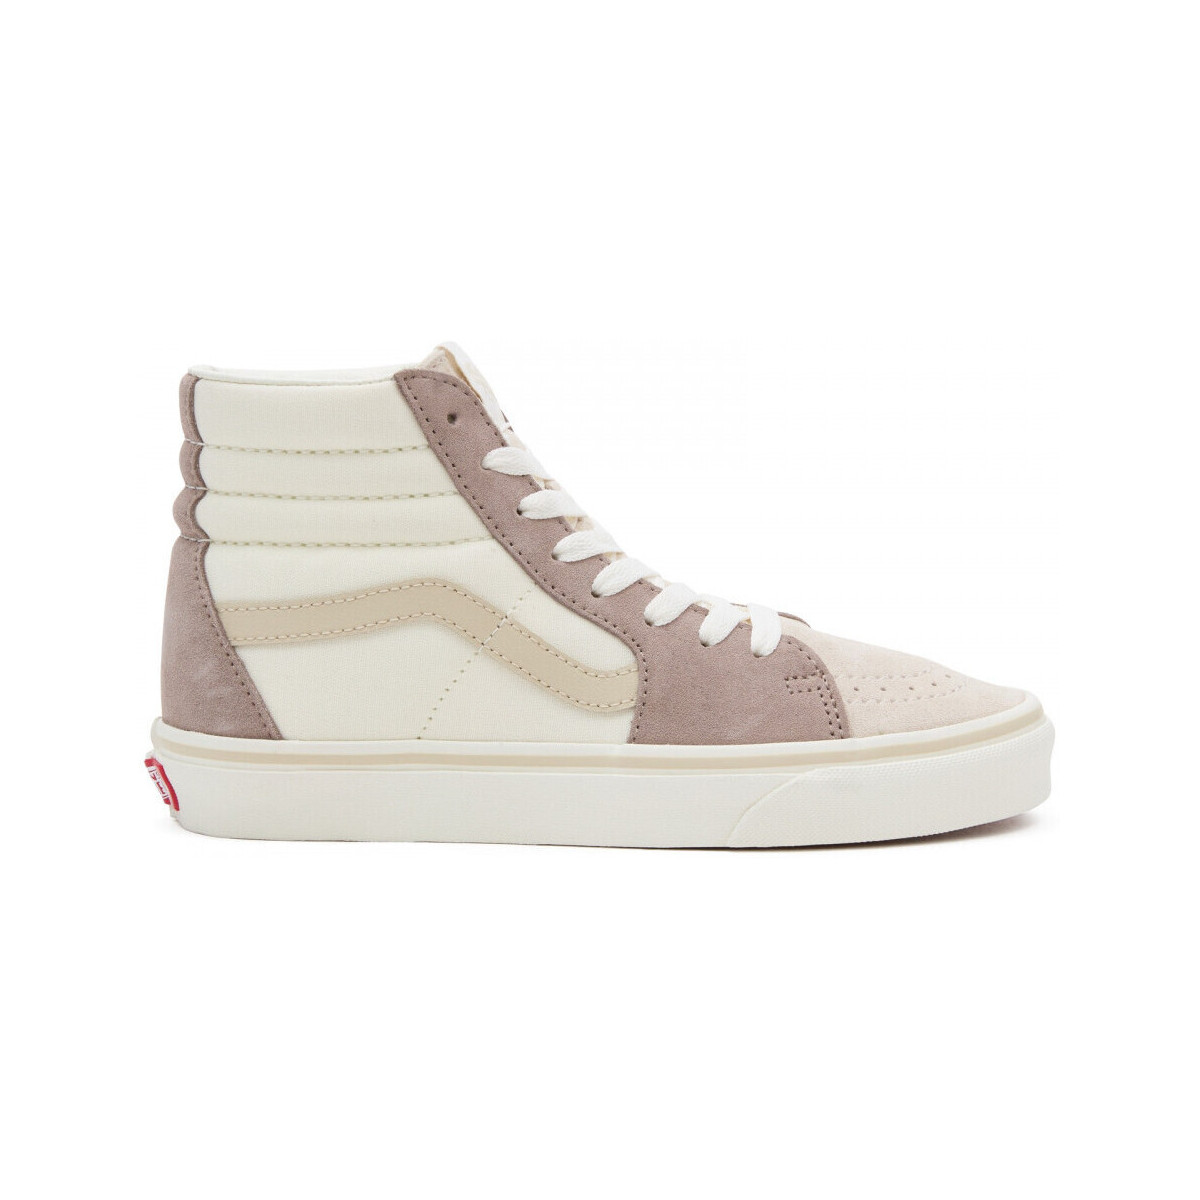 Παπούτσια Skate Παπούτσια Vans Sk8-hi Grey